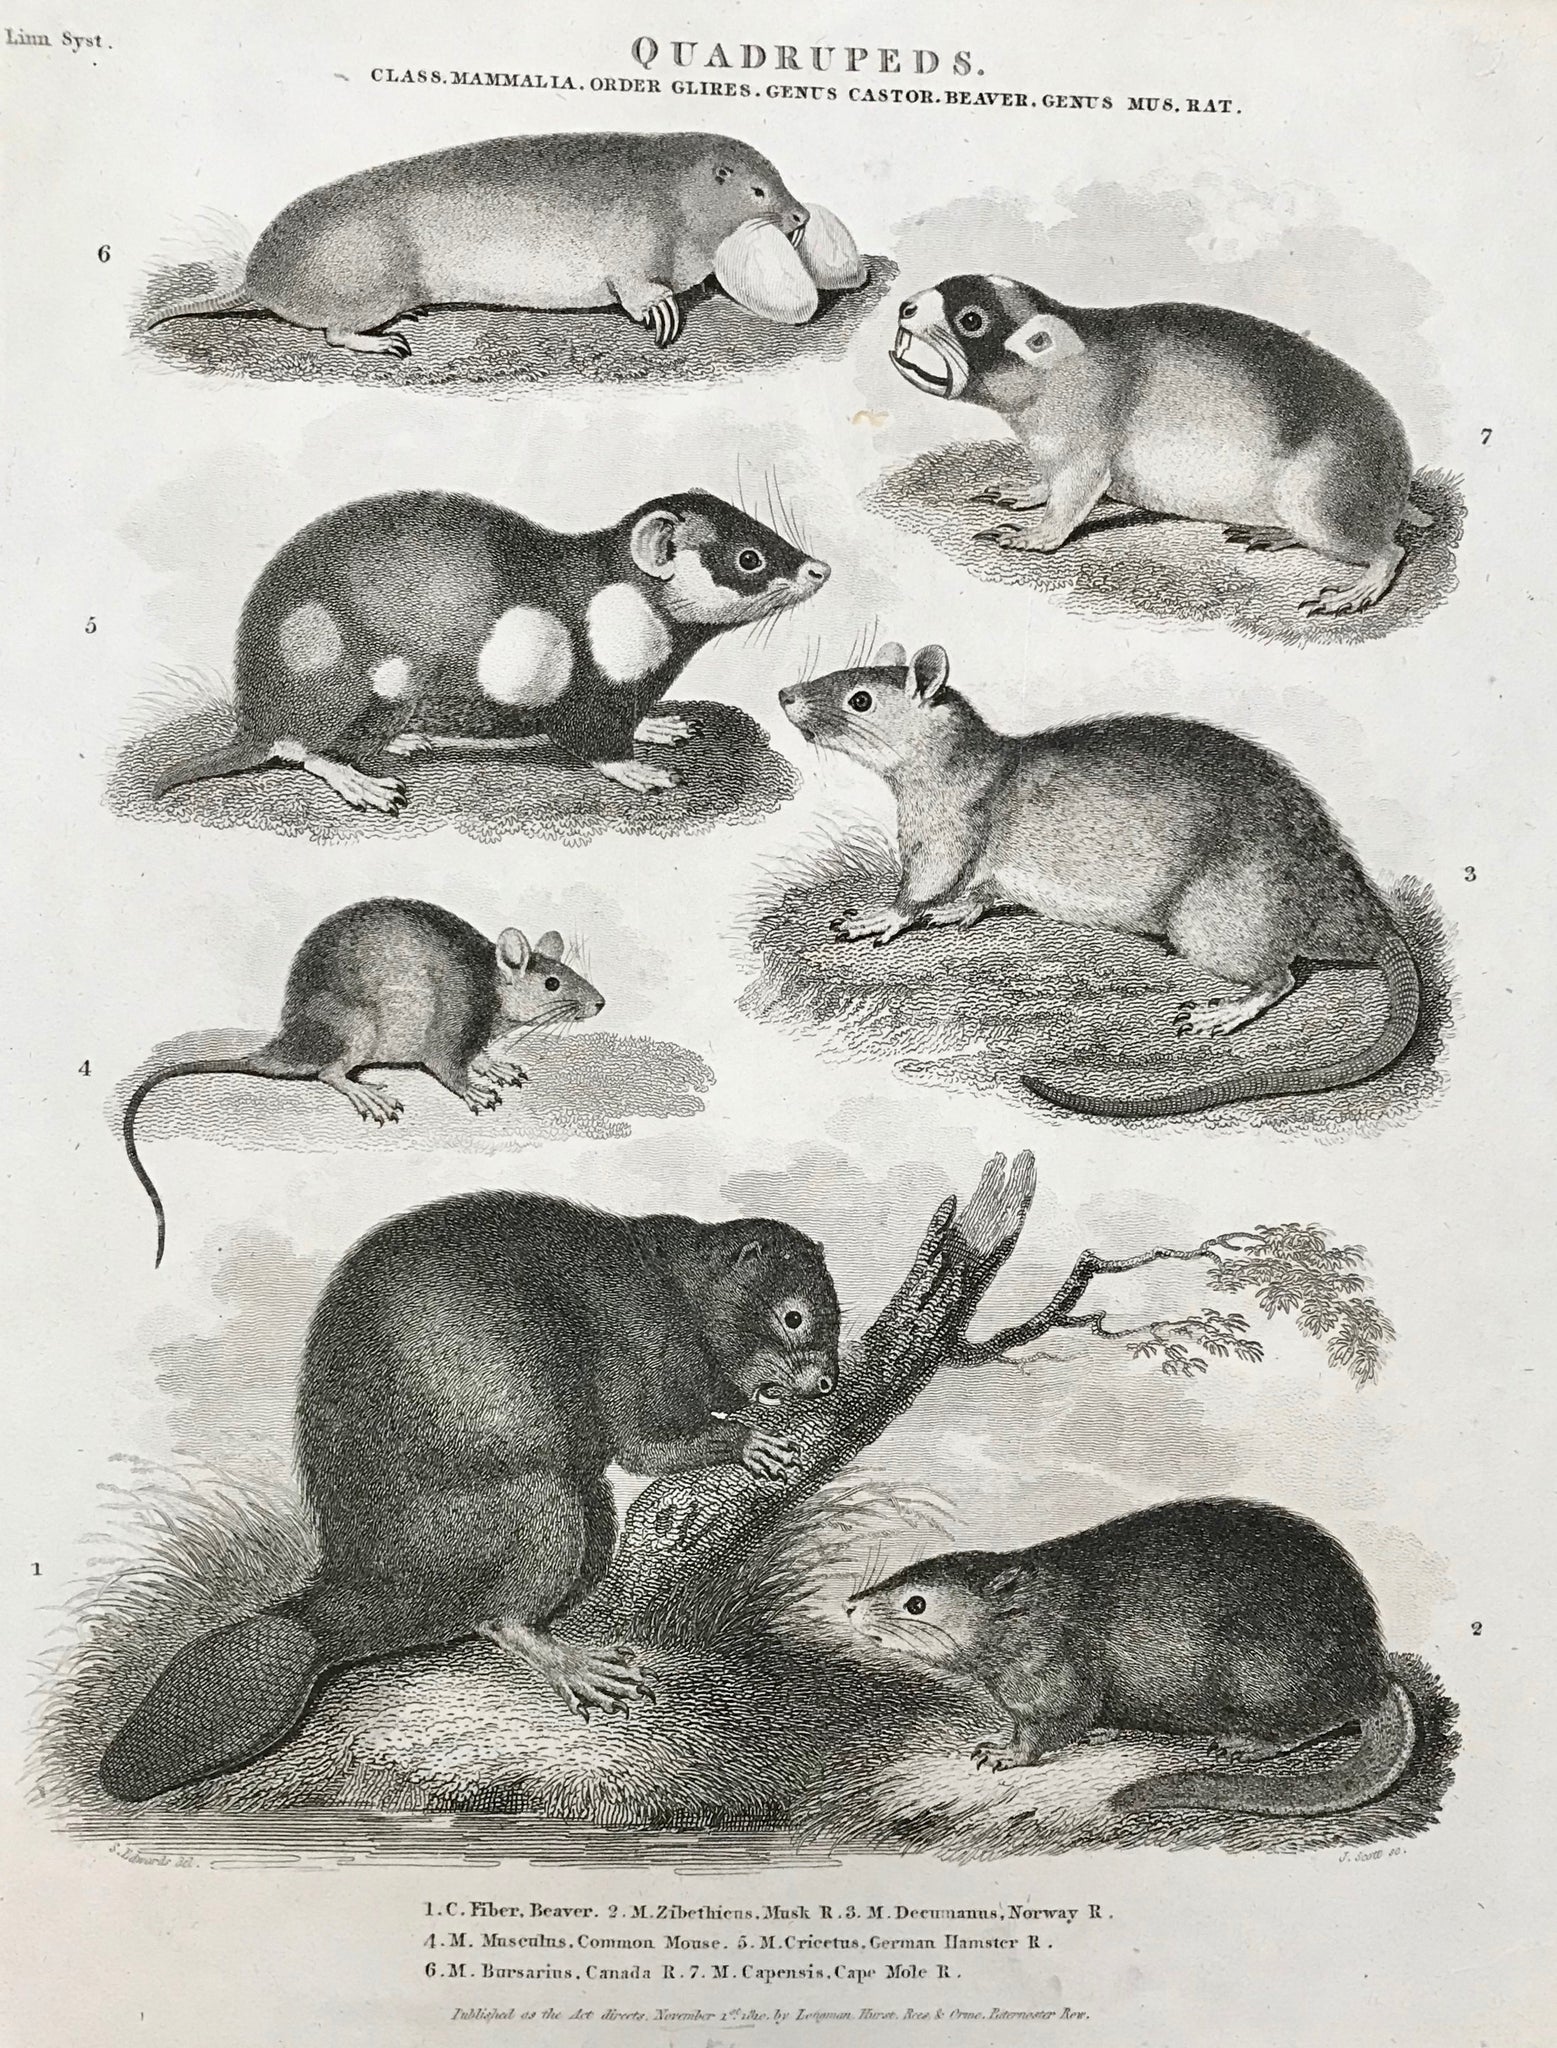 Quadrupeds Class. Mammalia. Order Glires Genus Castor. Beaver Genus Mus. Rat  1. C. Fiber Beaver. 2. M. Ziberthiens. Musk R. 3. M. Decumanus, Norway R. 4. M. Musculus, Comon Mouse 5. M. Cricutus, German Hamster R. 6. M. Bursarius, Canada R. 7. M. Capensis, Cape Mole R.